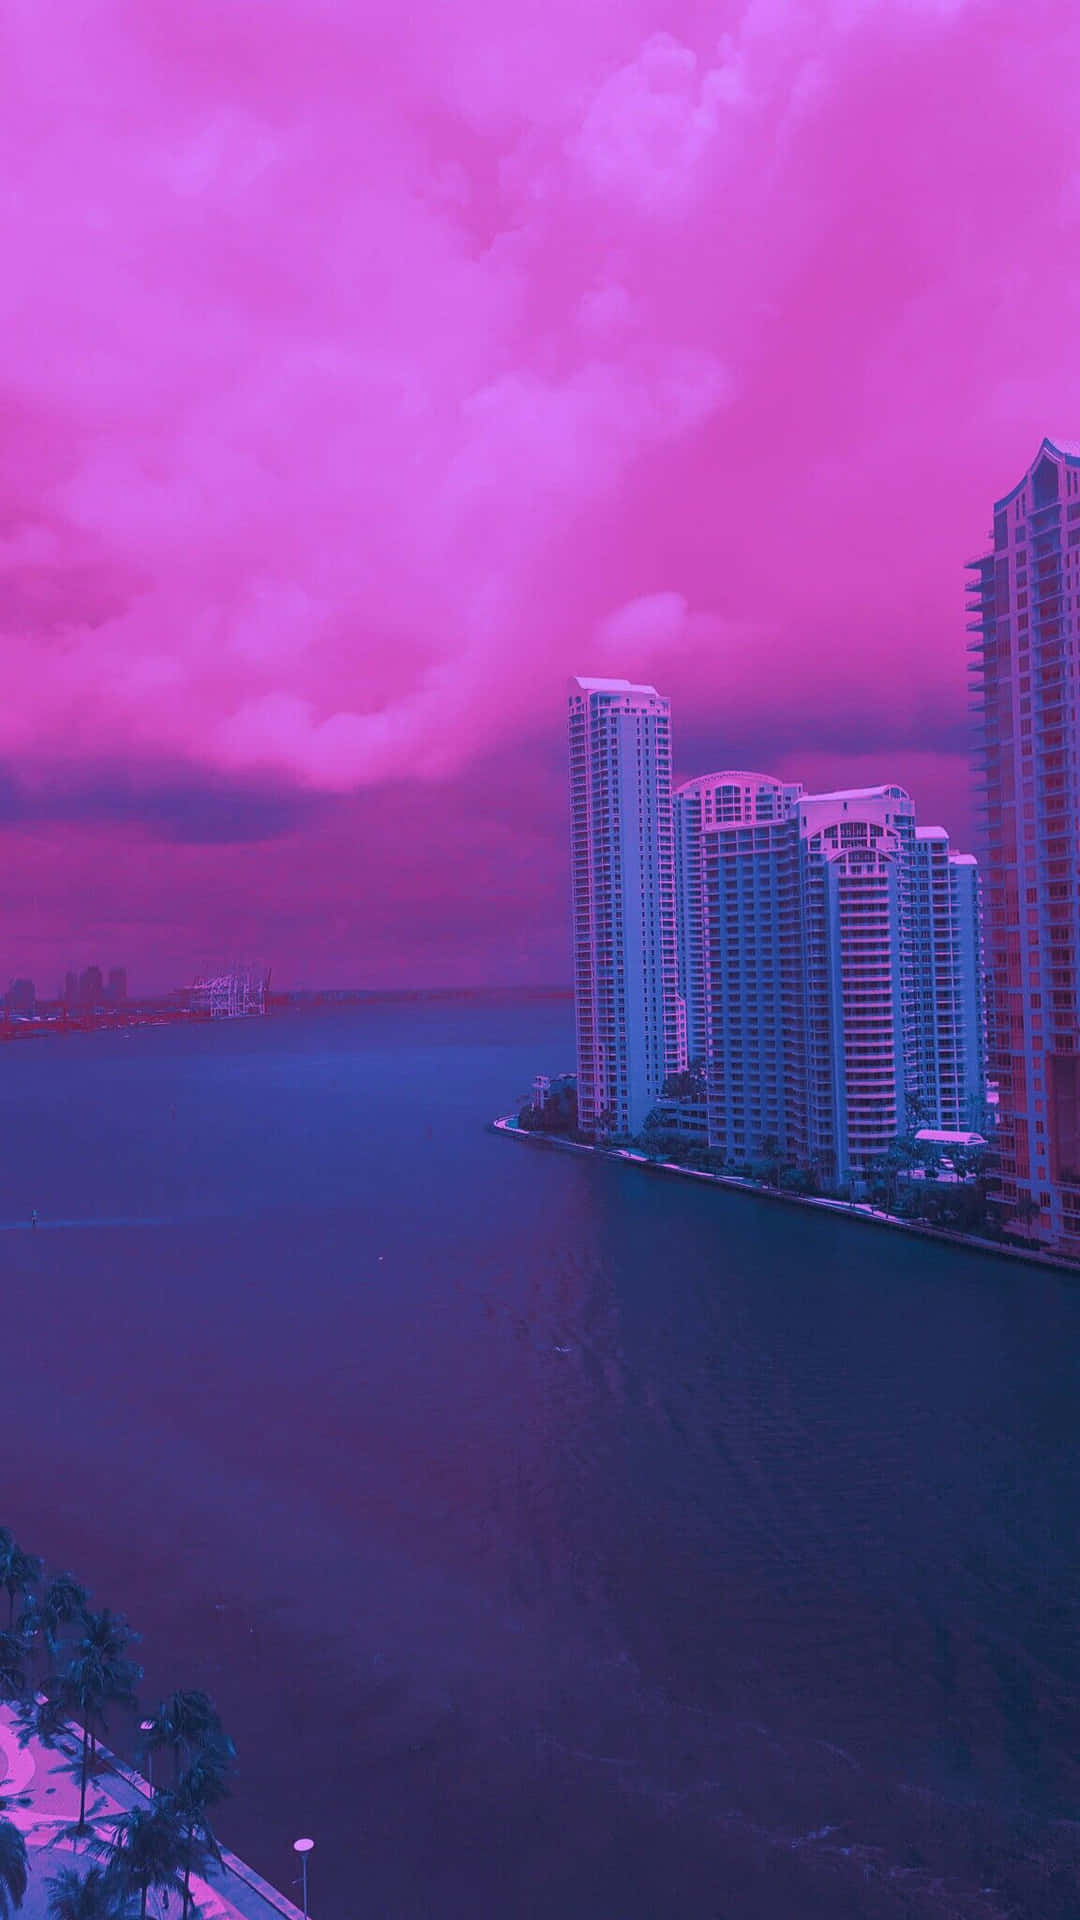 Stunning Miami Skyline at Sunset